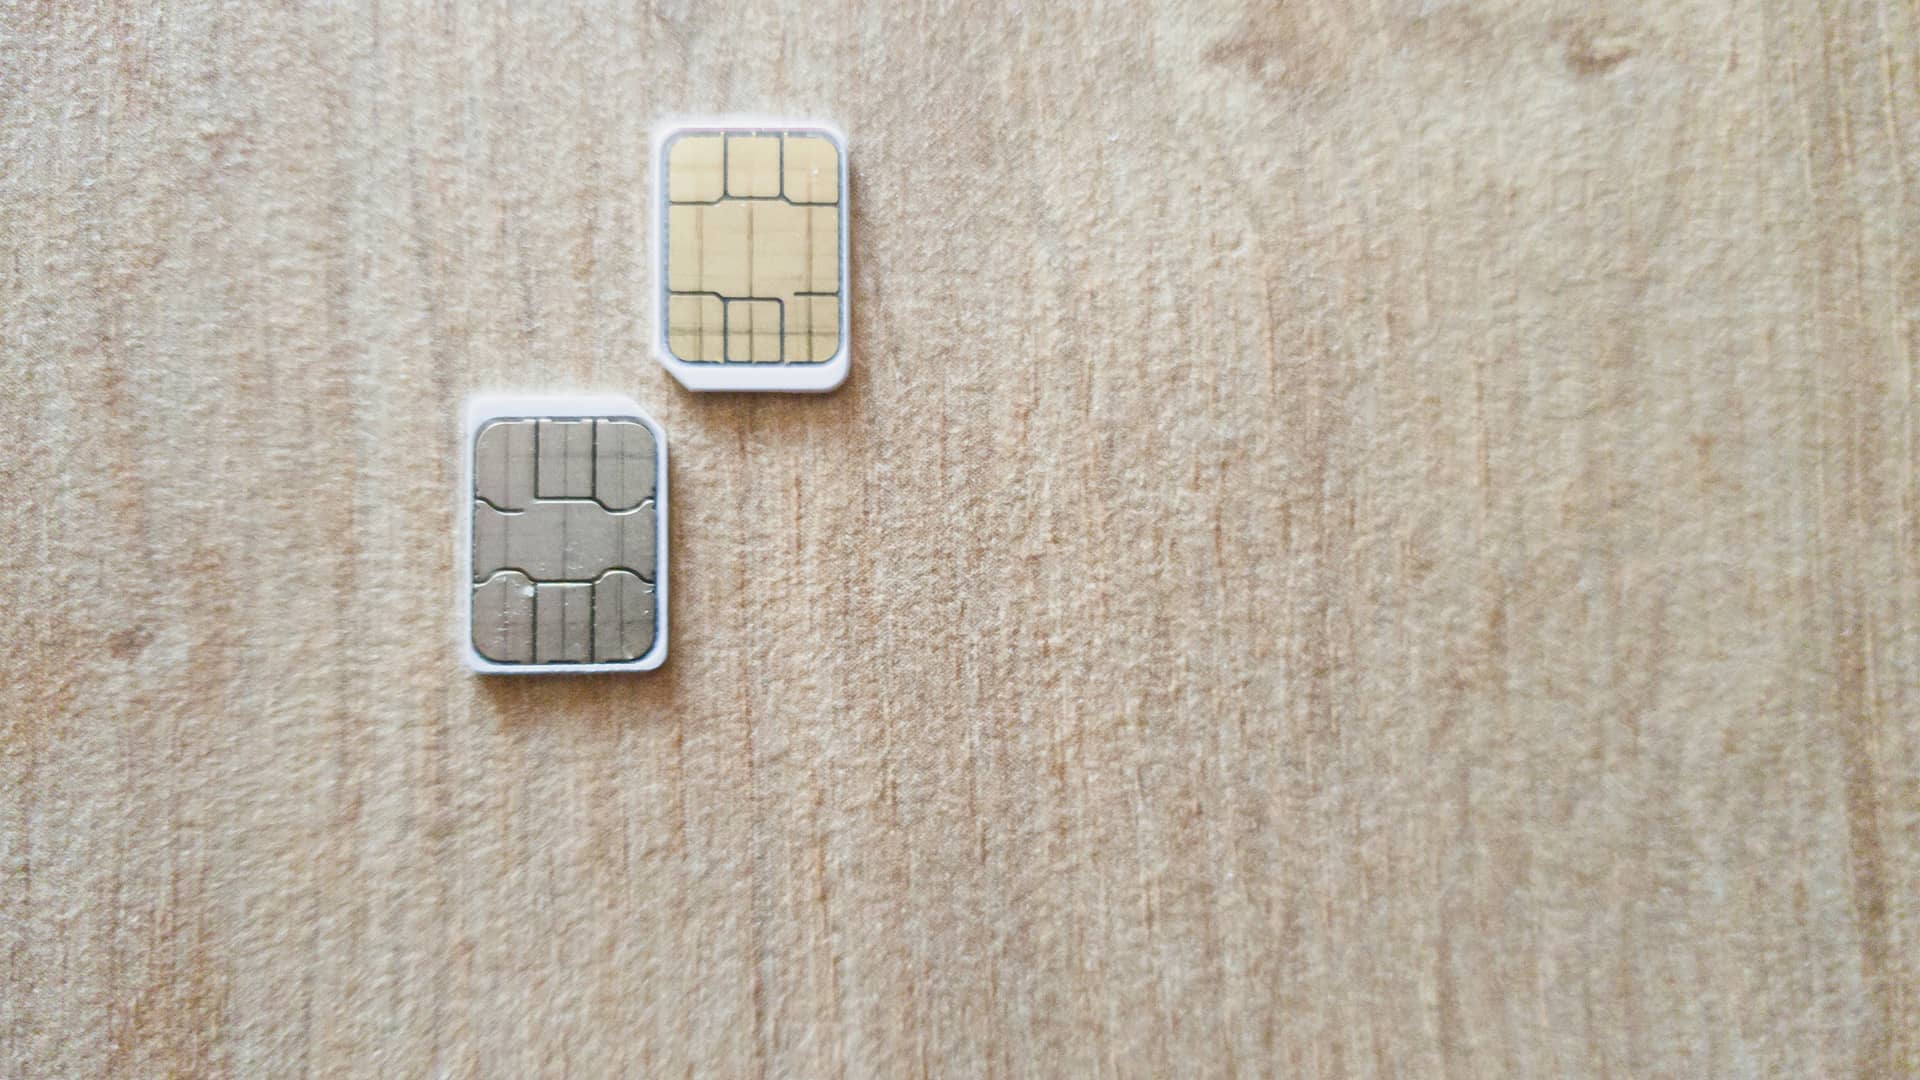 ▷ Duplicado tarjeta SIM Lycamobile: opciones y alternativas